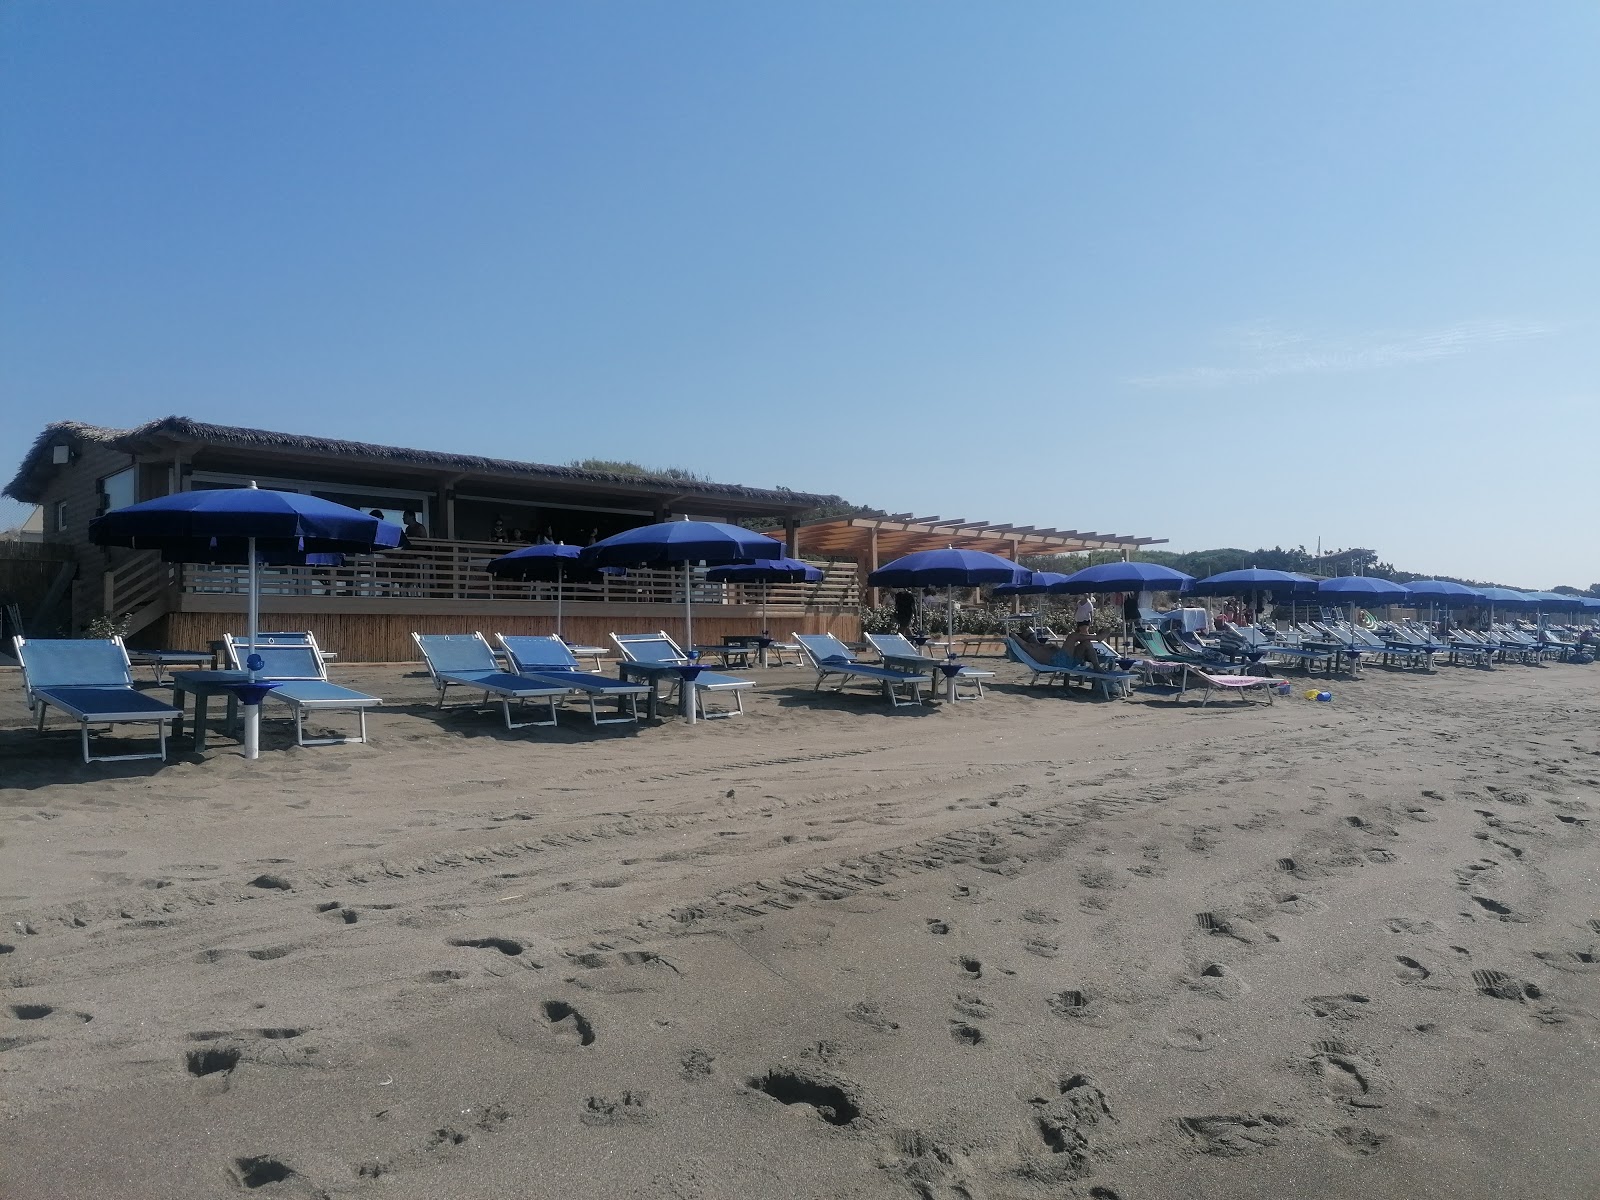 Foto di Spiaggia Capalbio ubicato in zona naturale